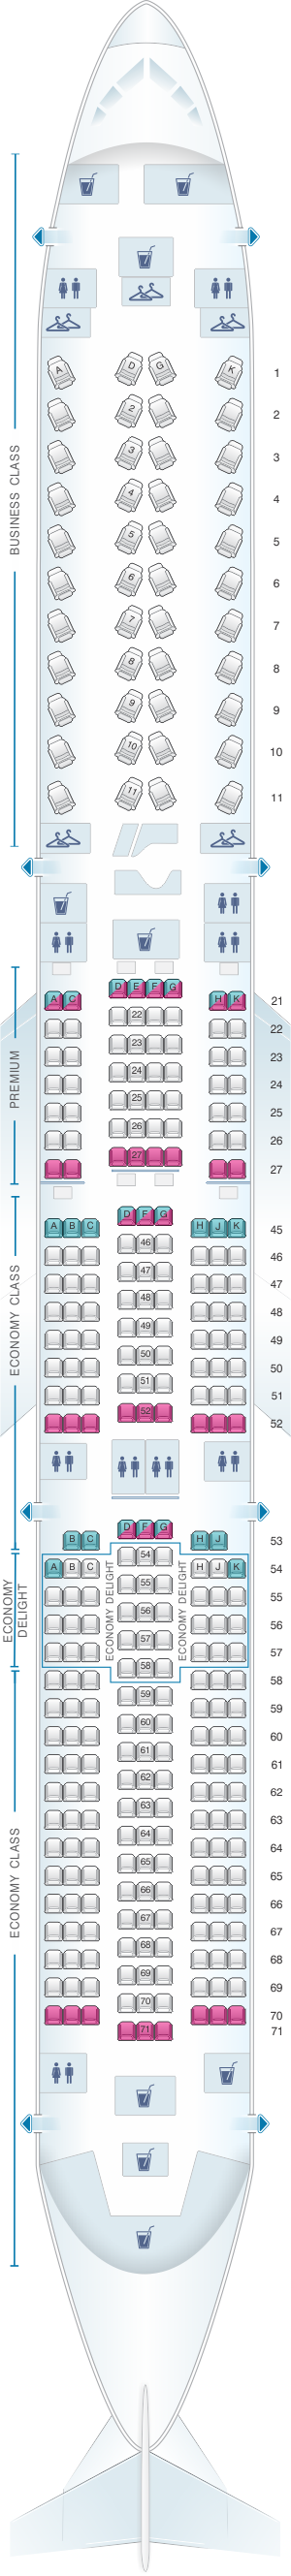 Seat Map Virgin Atlantic Airbus A350 1000 1 